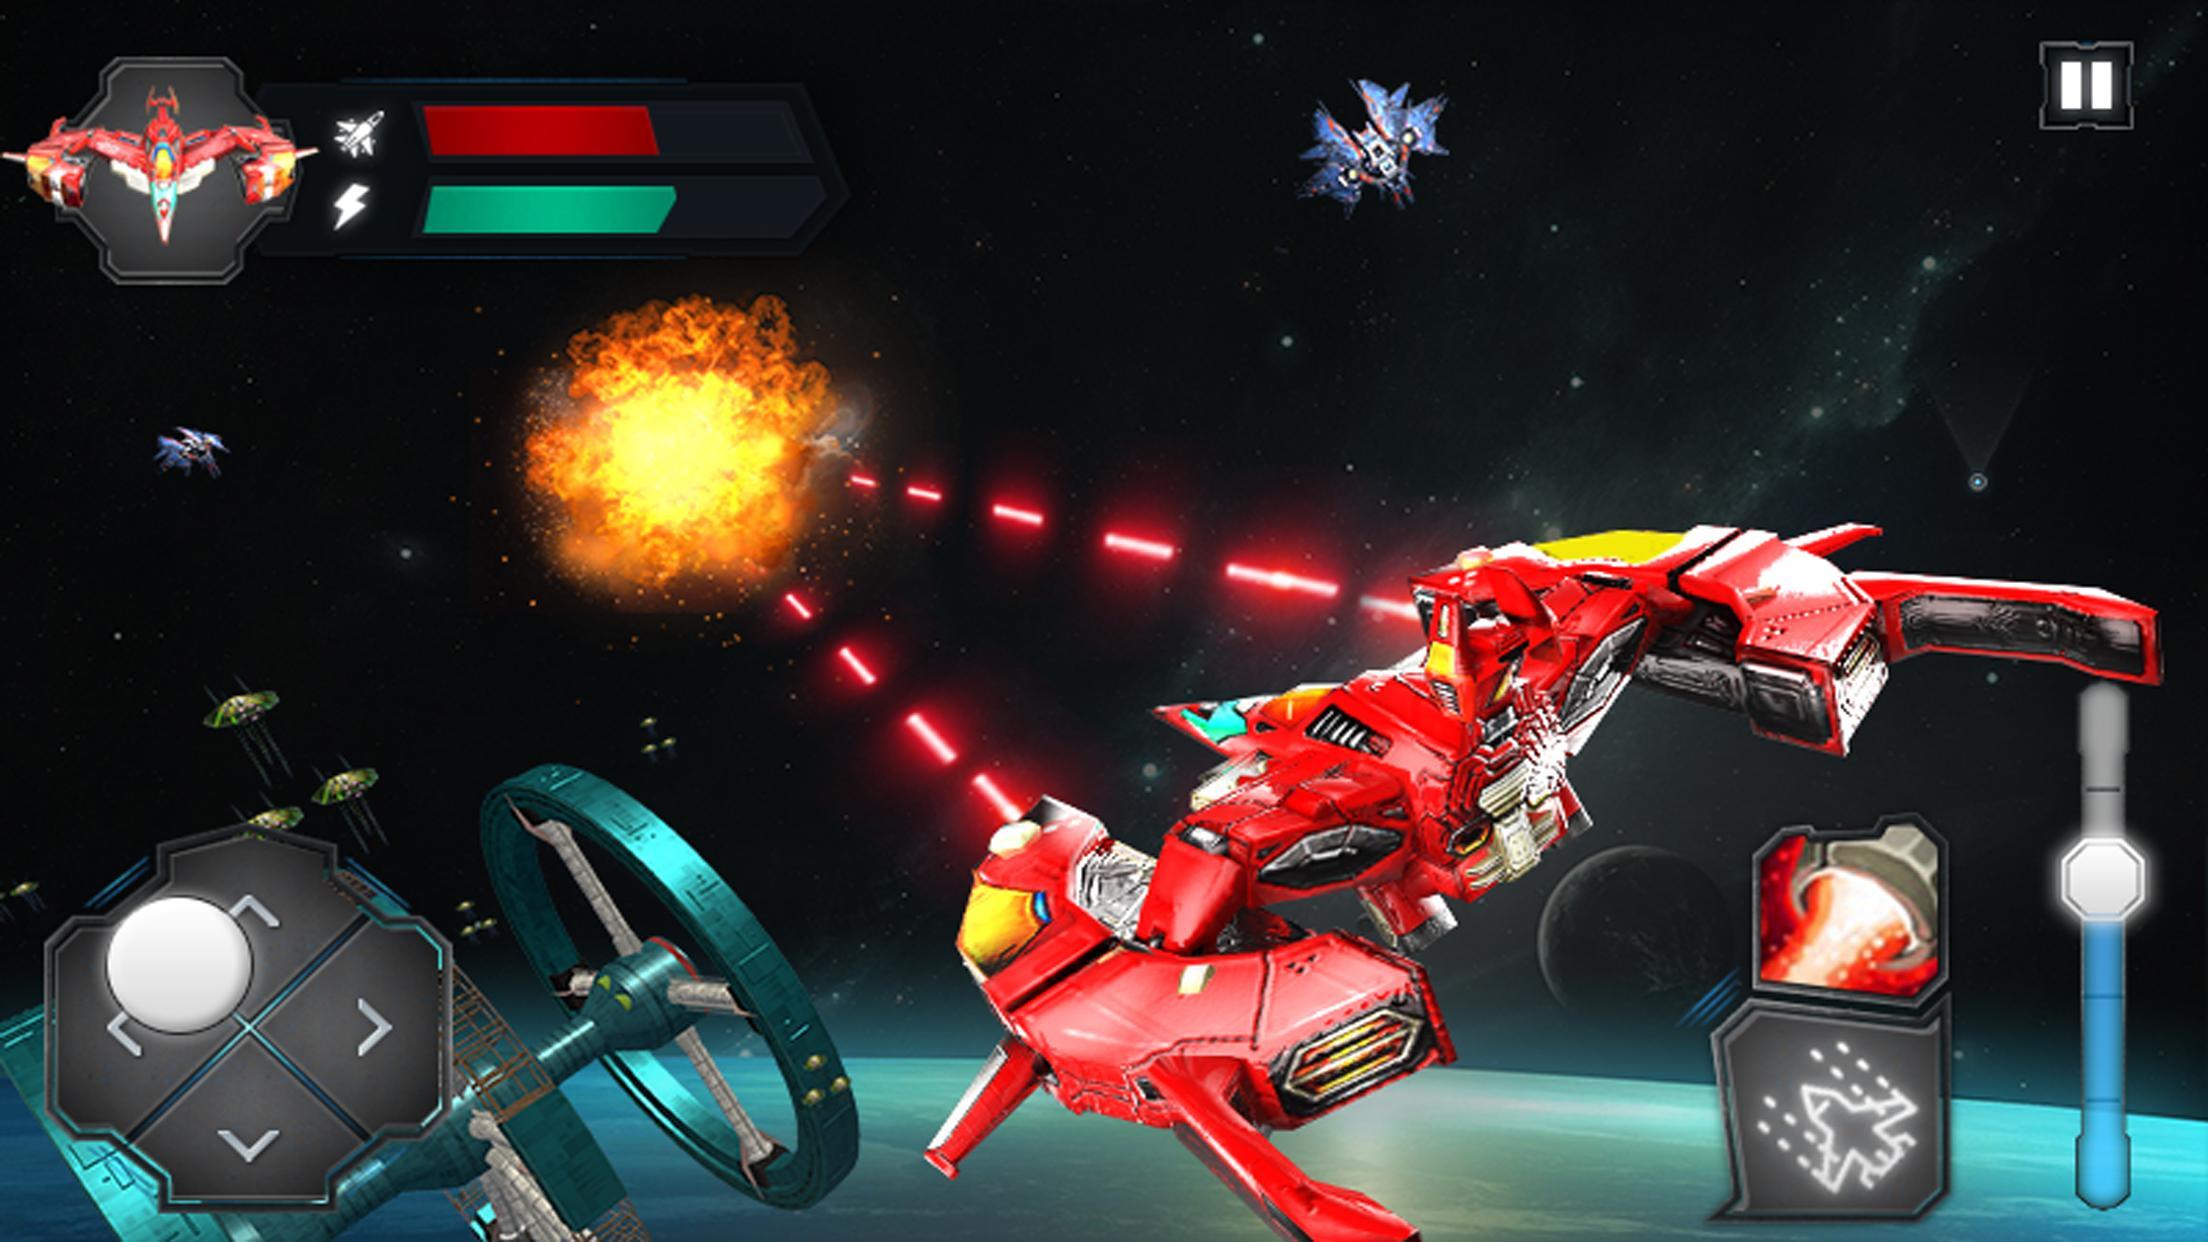 لعبة حرب الفضاء المجرة: أبطال سفينة الفضاء ثلاثية for Android - APK Download